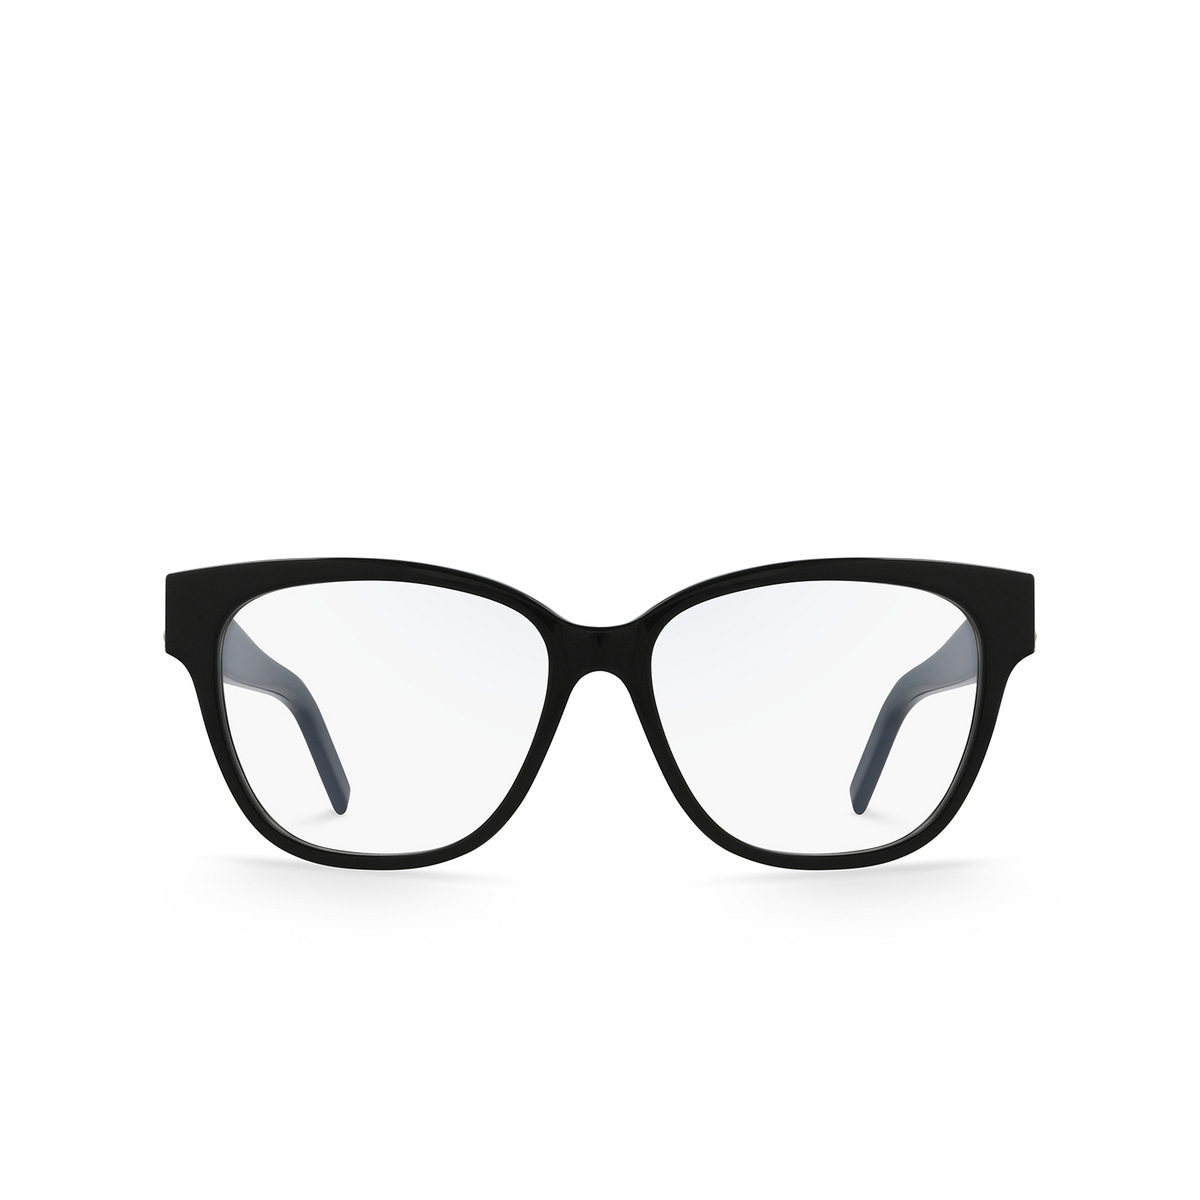 Saint Laurent® Square Eyeglasses: SL M33 color 003 Black - front view